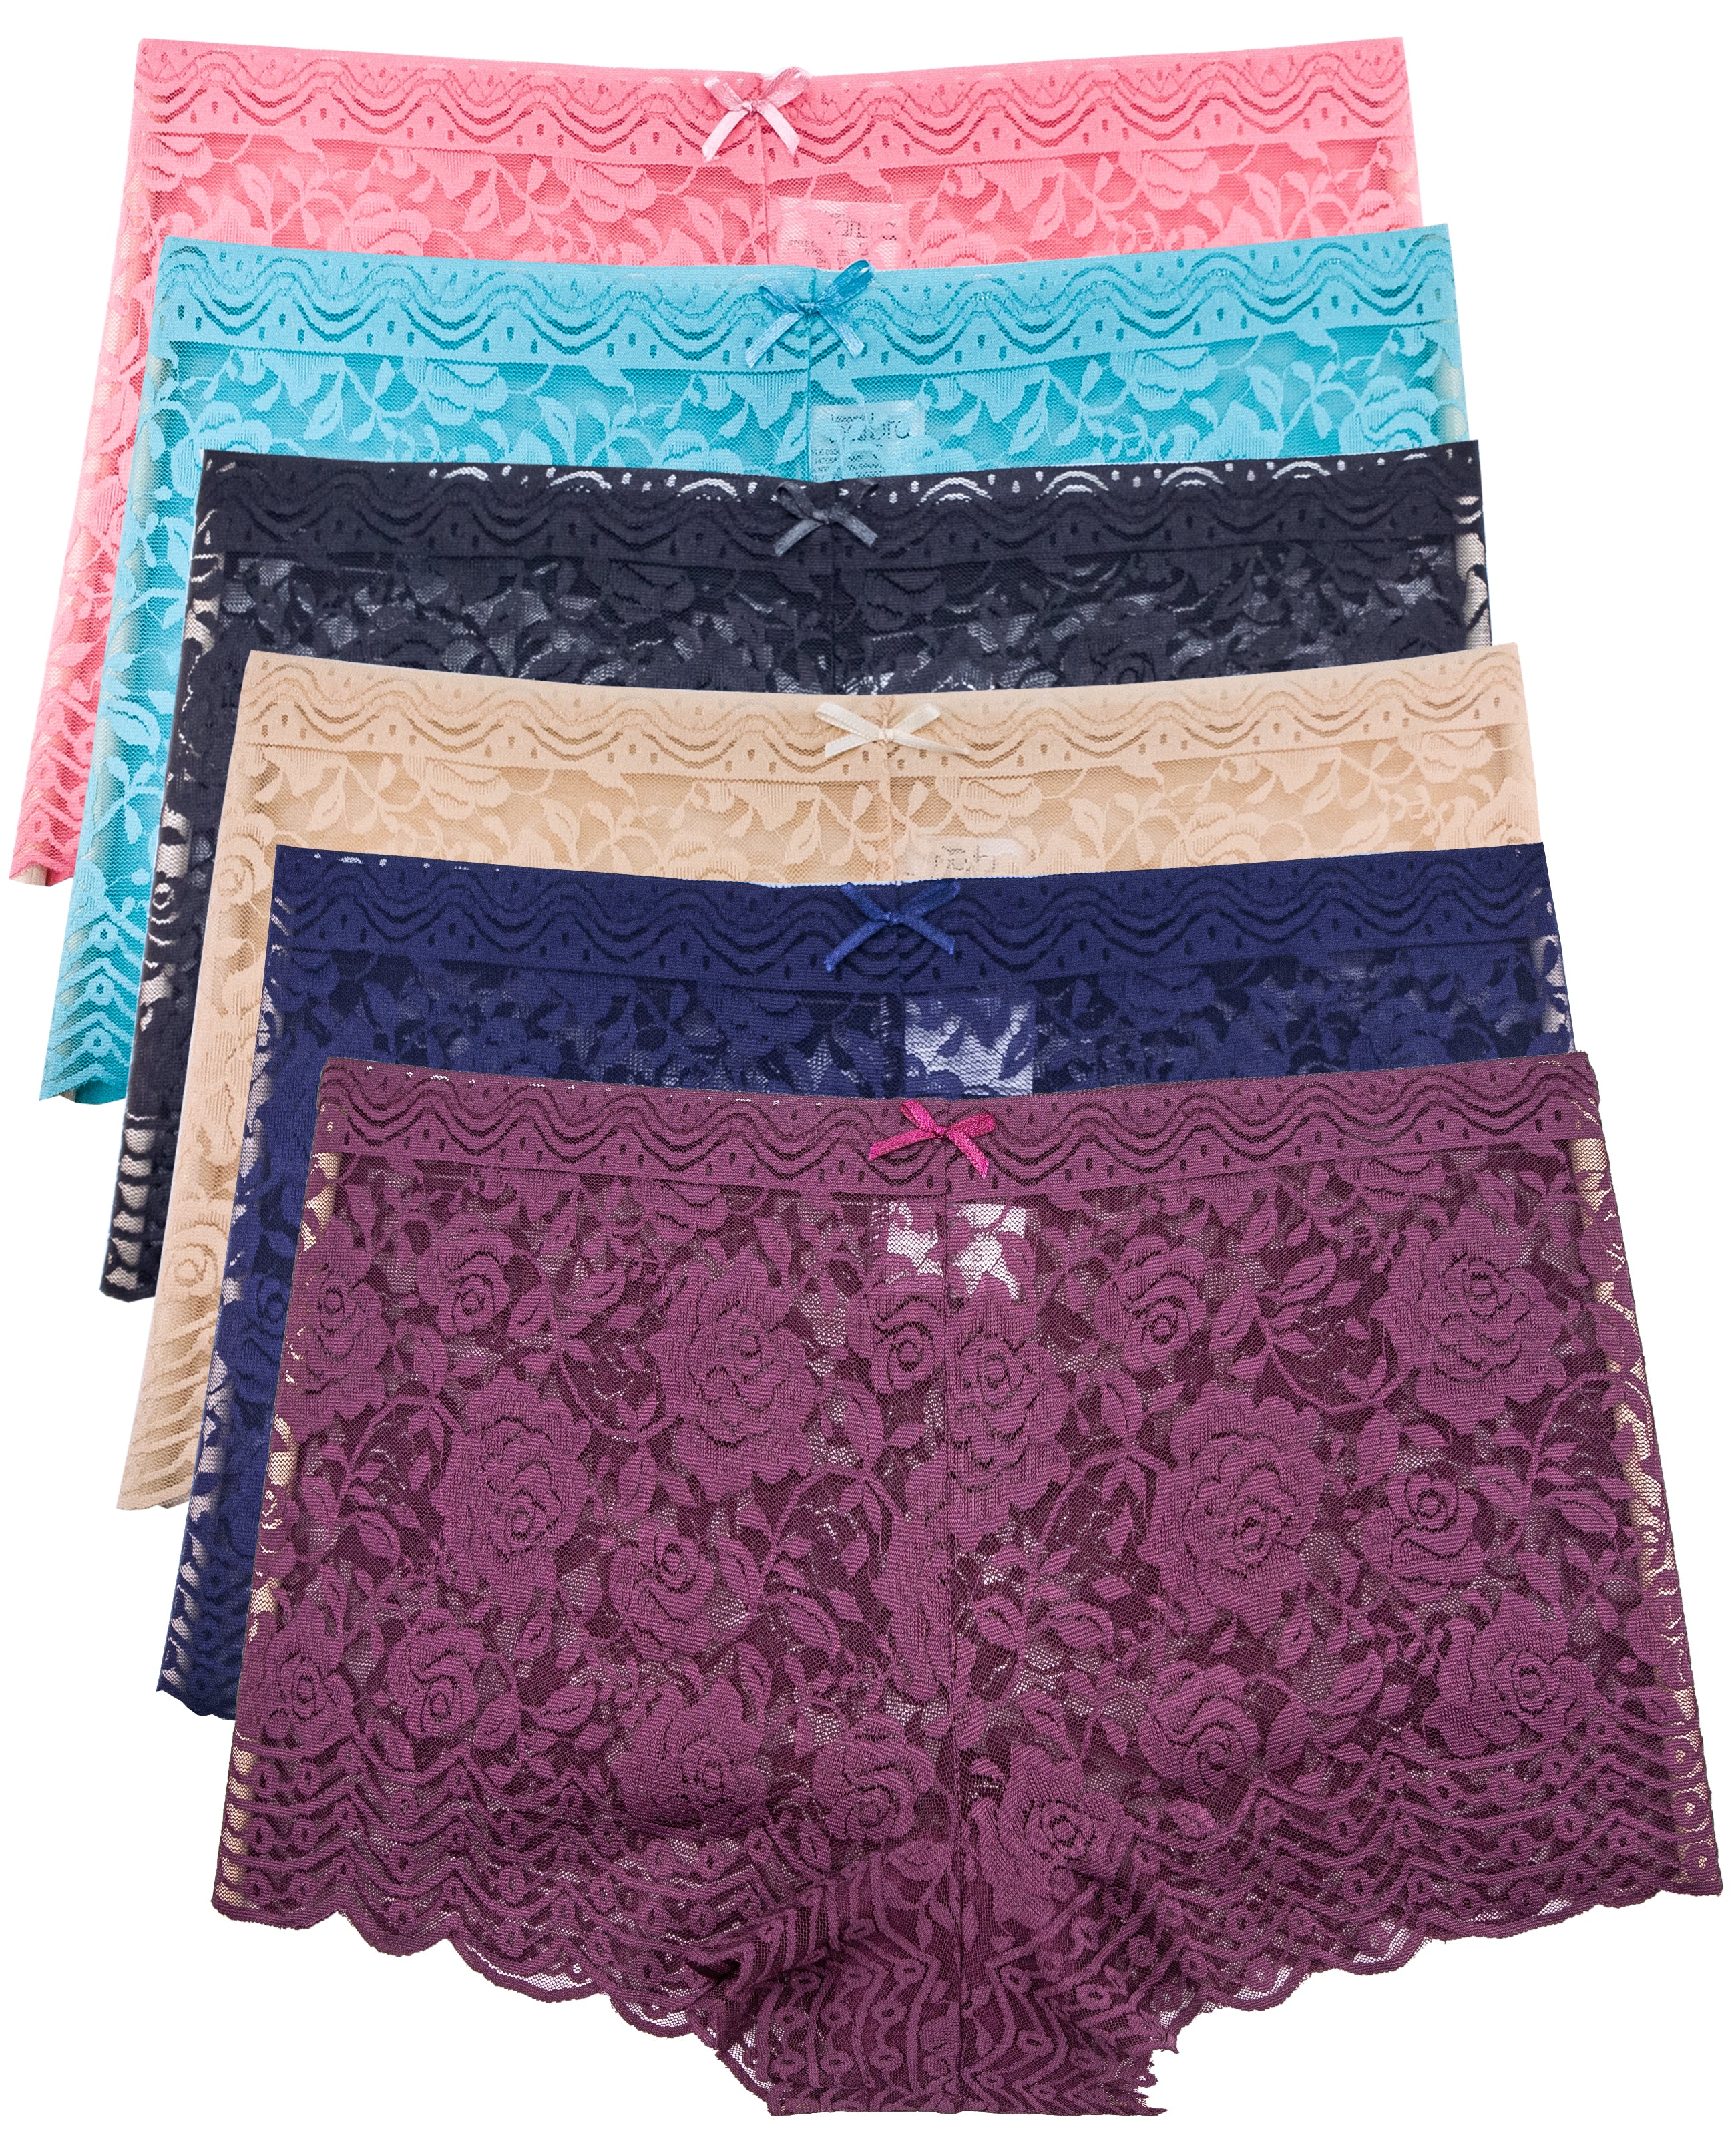 Generic 6pcs S-4xl Plus Size High Waisted Lace Underwear Boyshorts